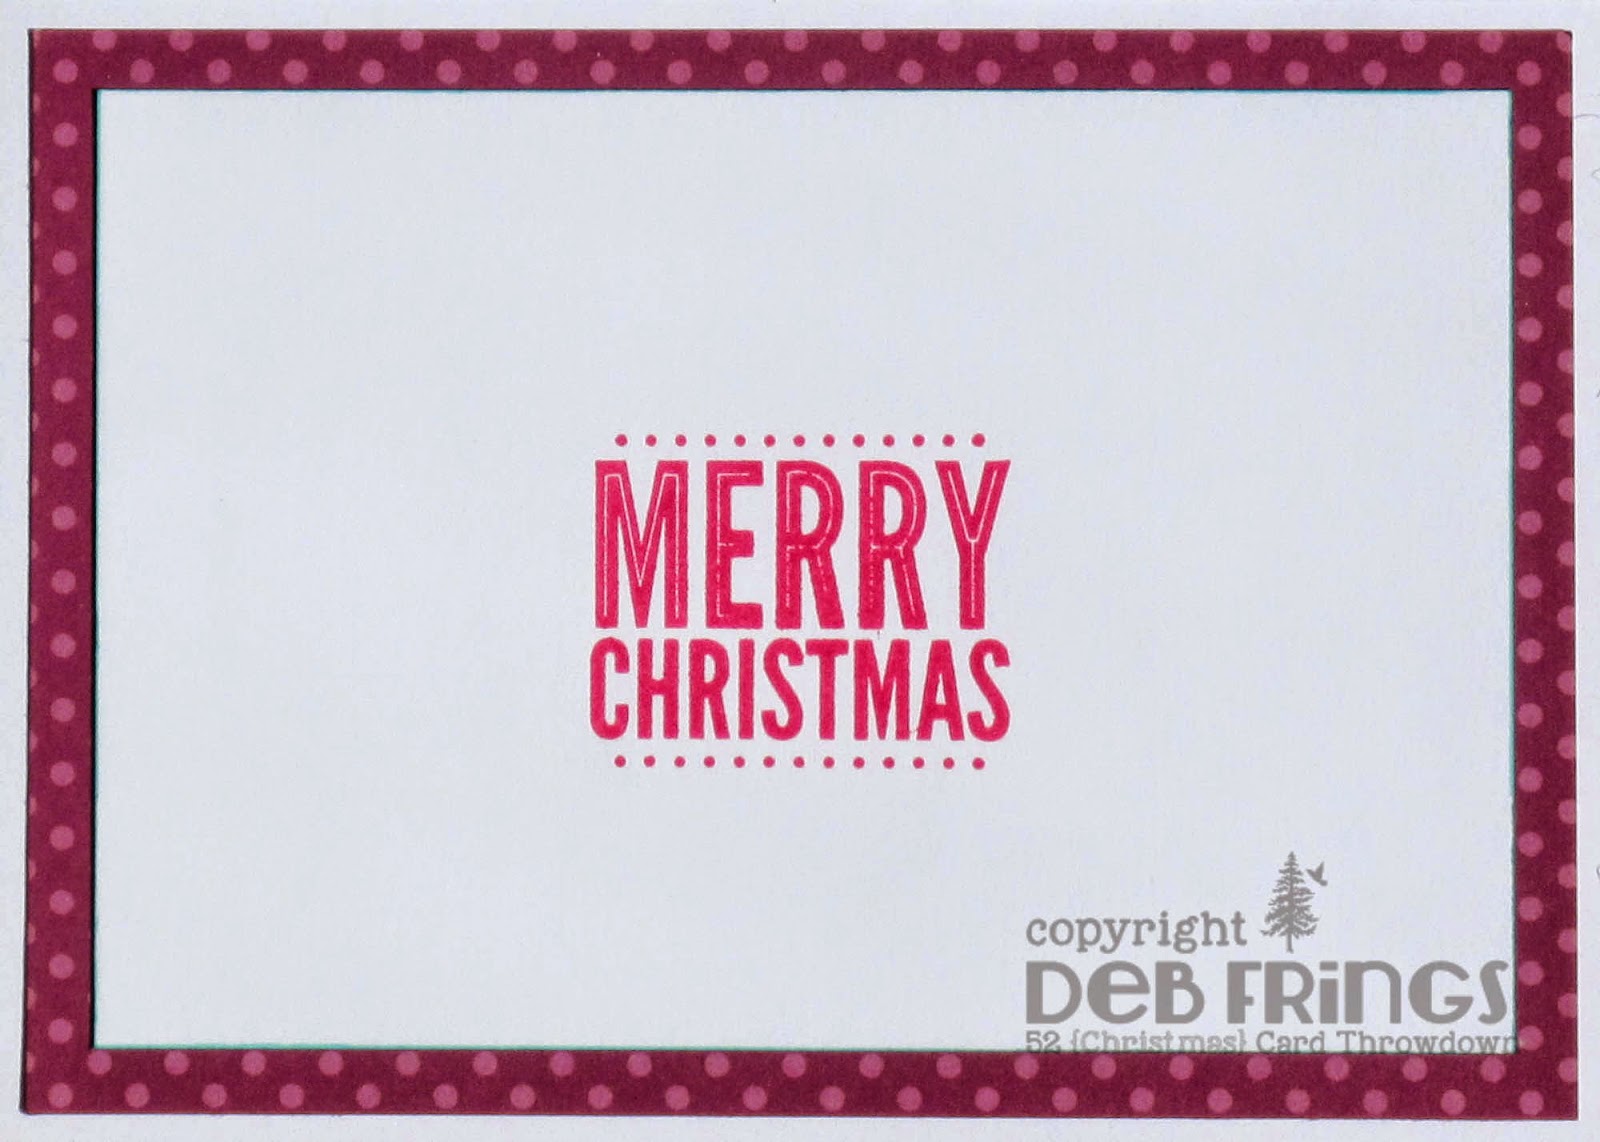 Merry & Bright inside - photo by Deborah Frings - Deborah's Gems